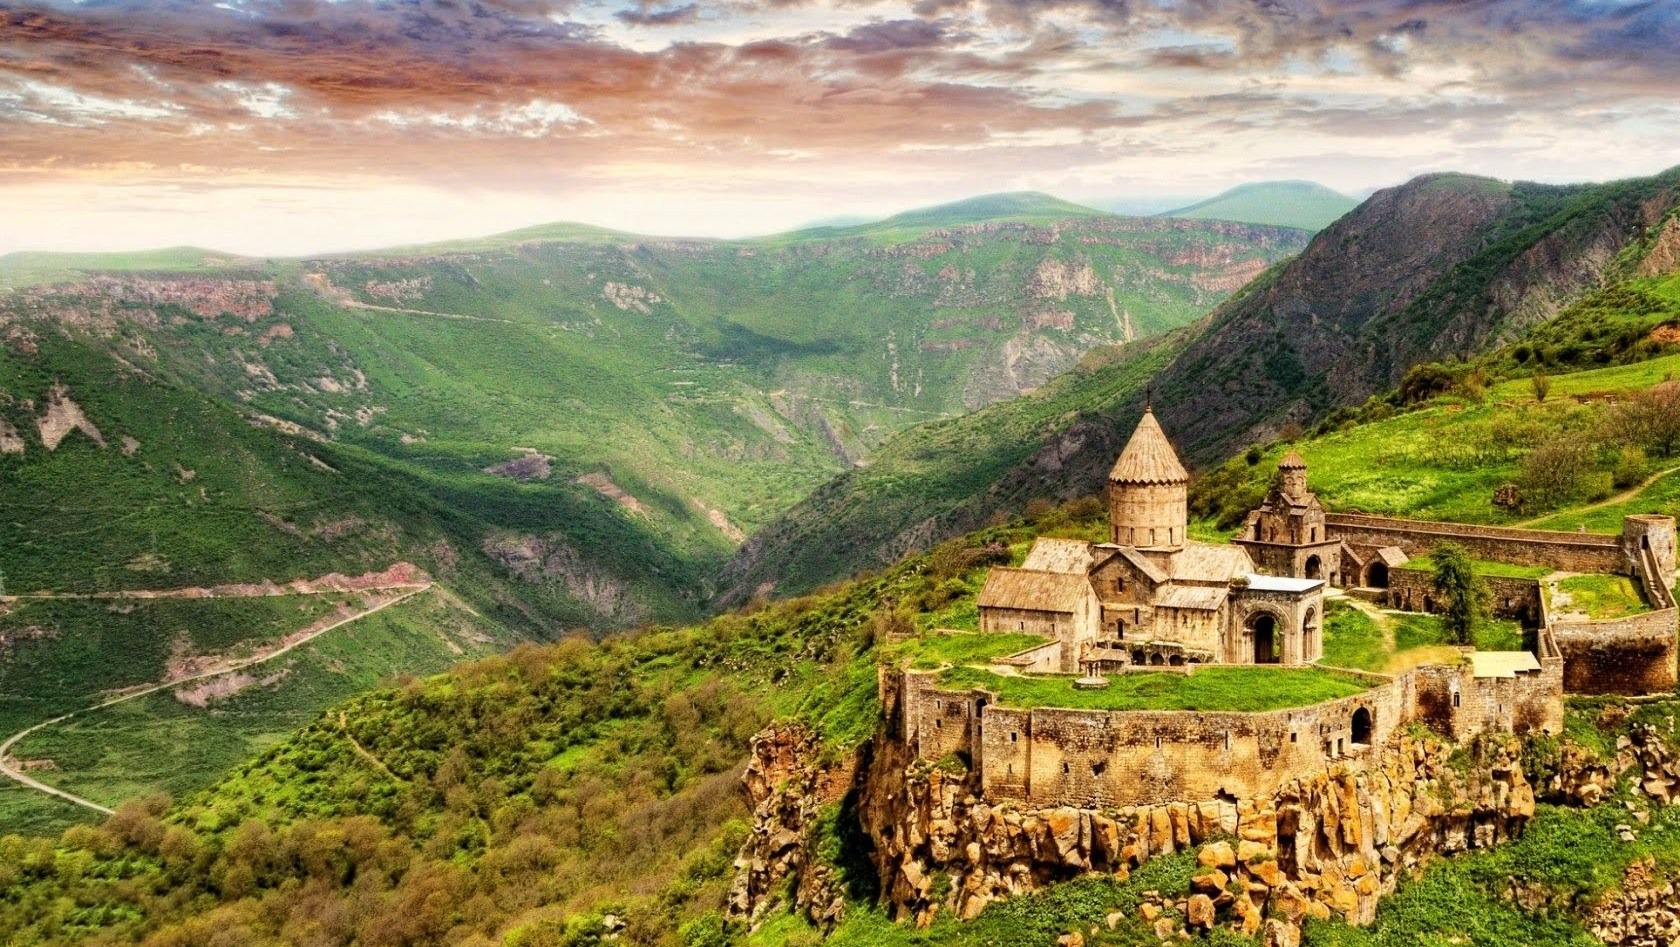 unique places to visit in armenia